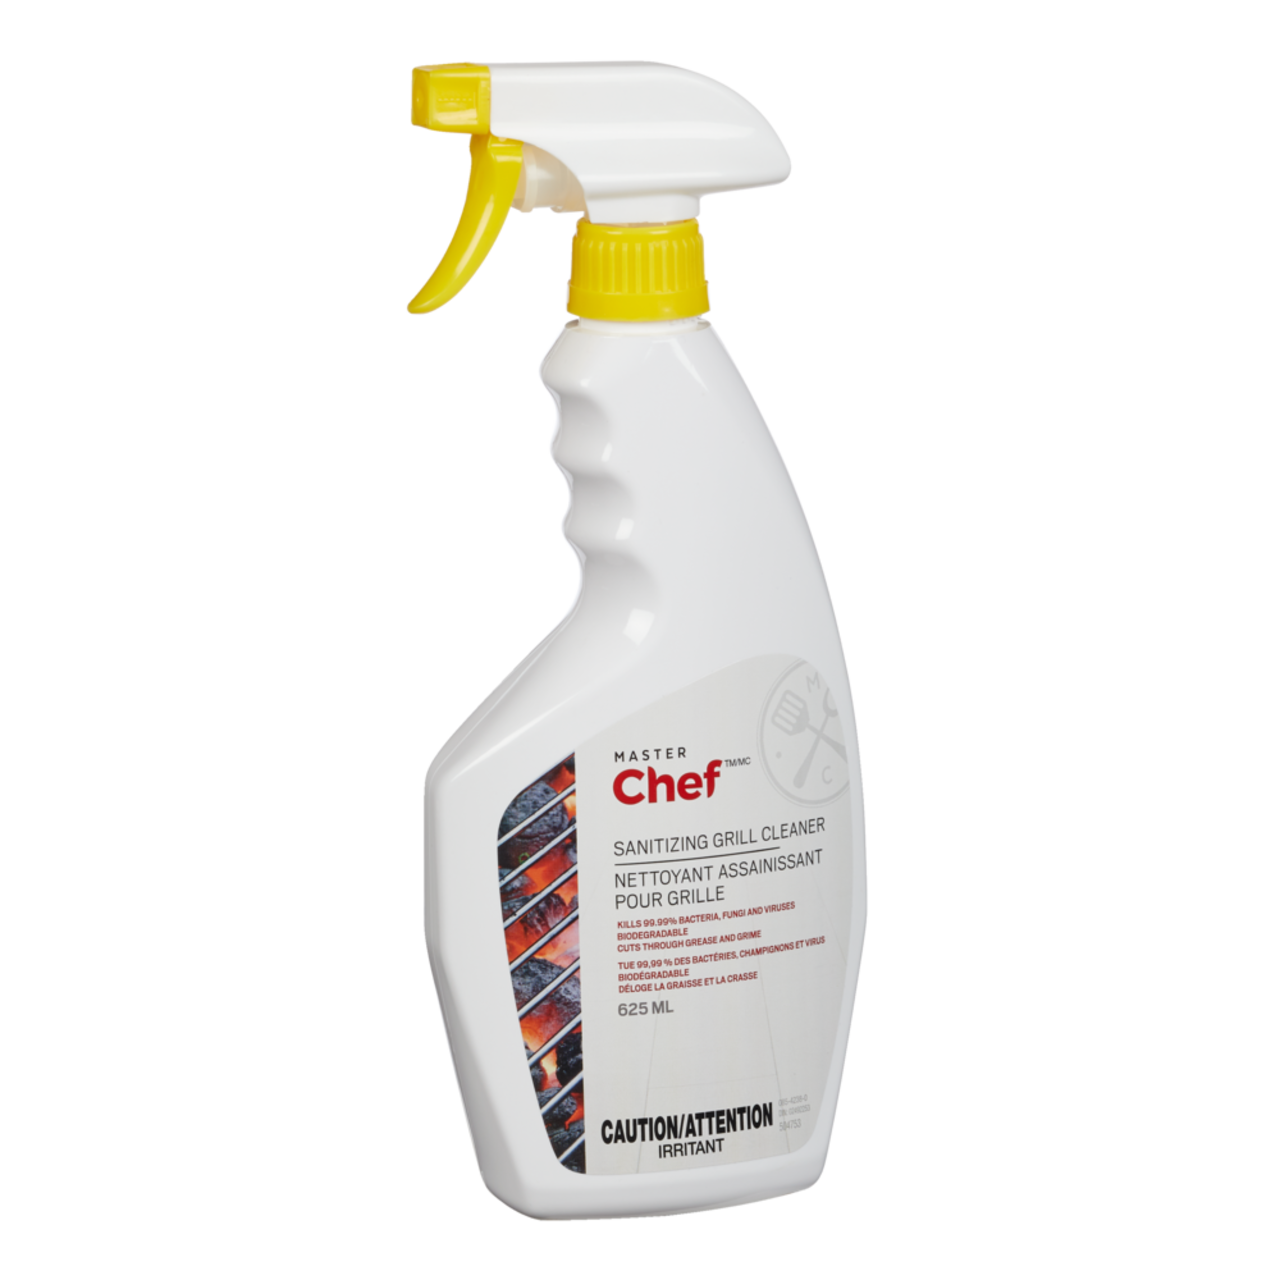 Nettoyant désinfectant puissant pour barbecue MASTER Chef éliminant 99,99 %  des bactéries, des champignons et des virus